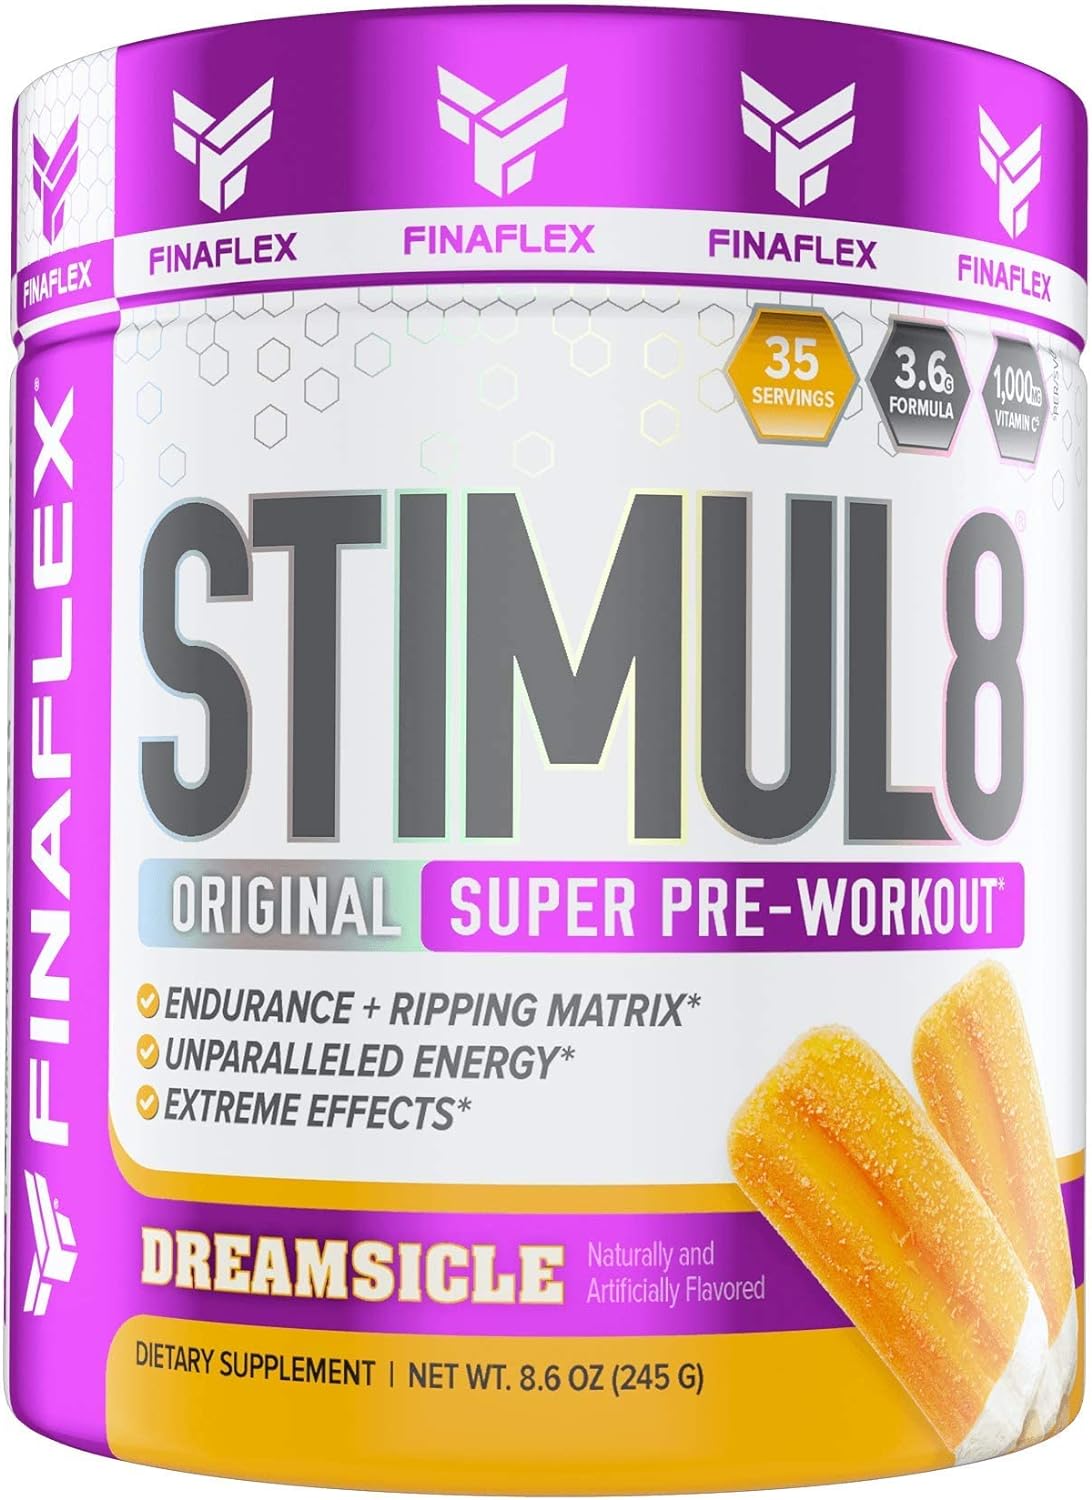 FINAFLEX STIMUL8 Original Super Pre-Workout, Dreamsicle - Energy, Stre